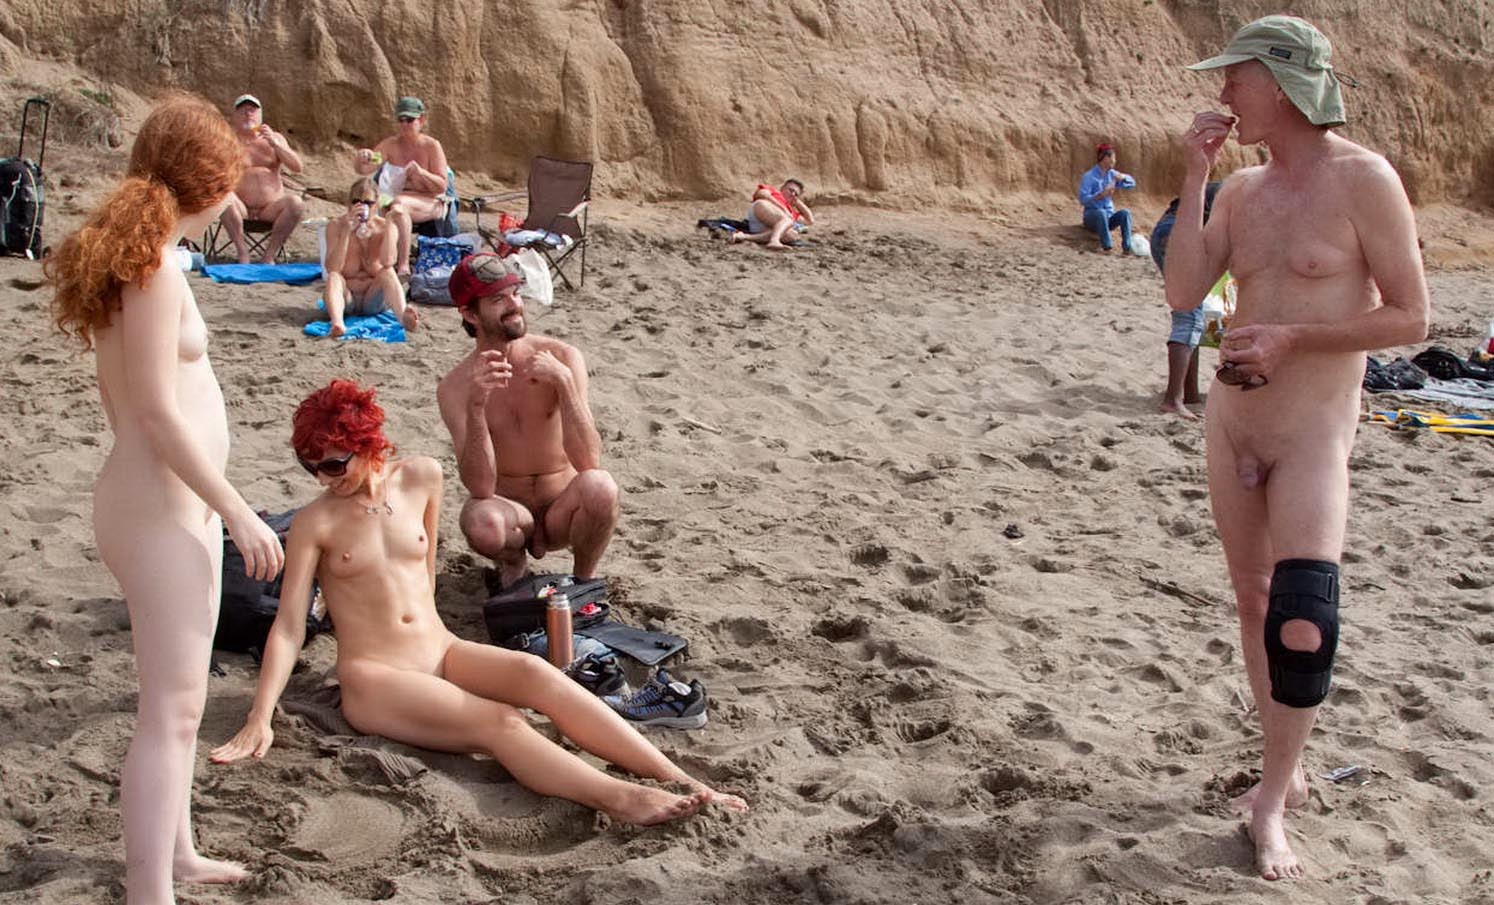 Беспредел На Нудистском Пляже - Нудизм И Натуризм